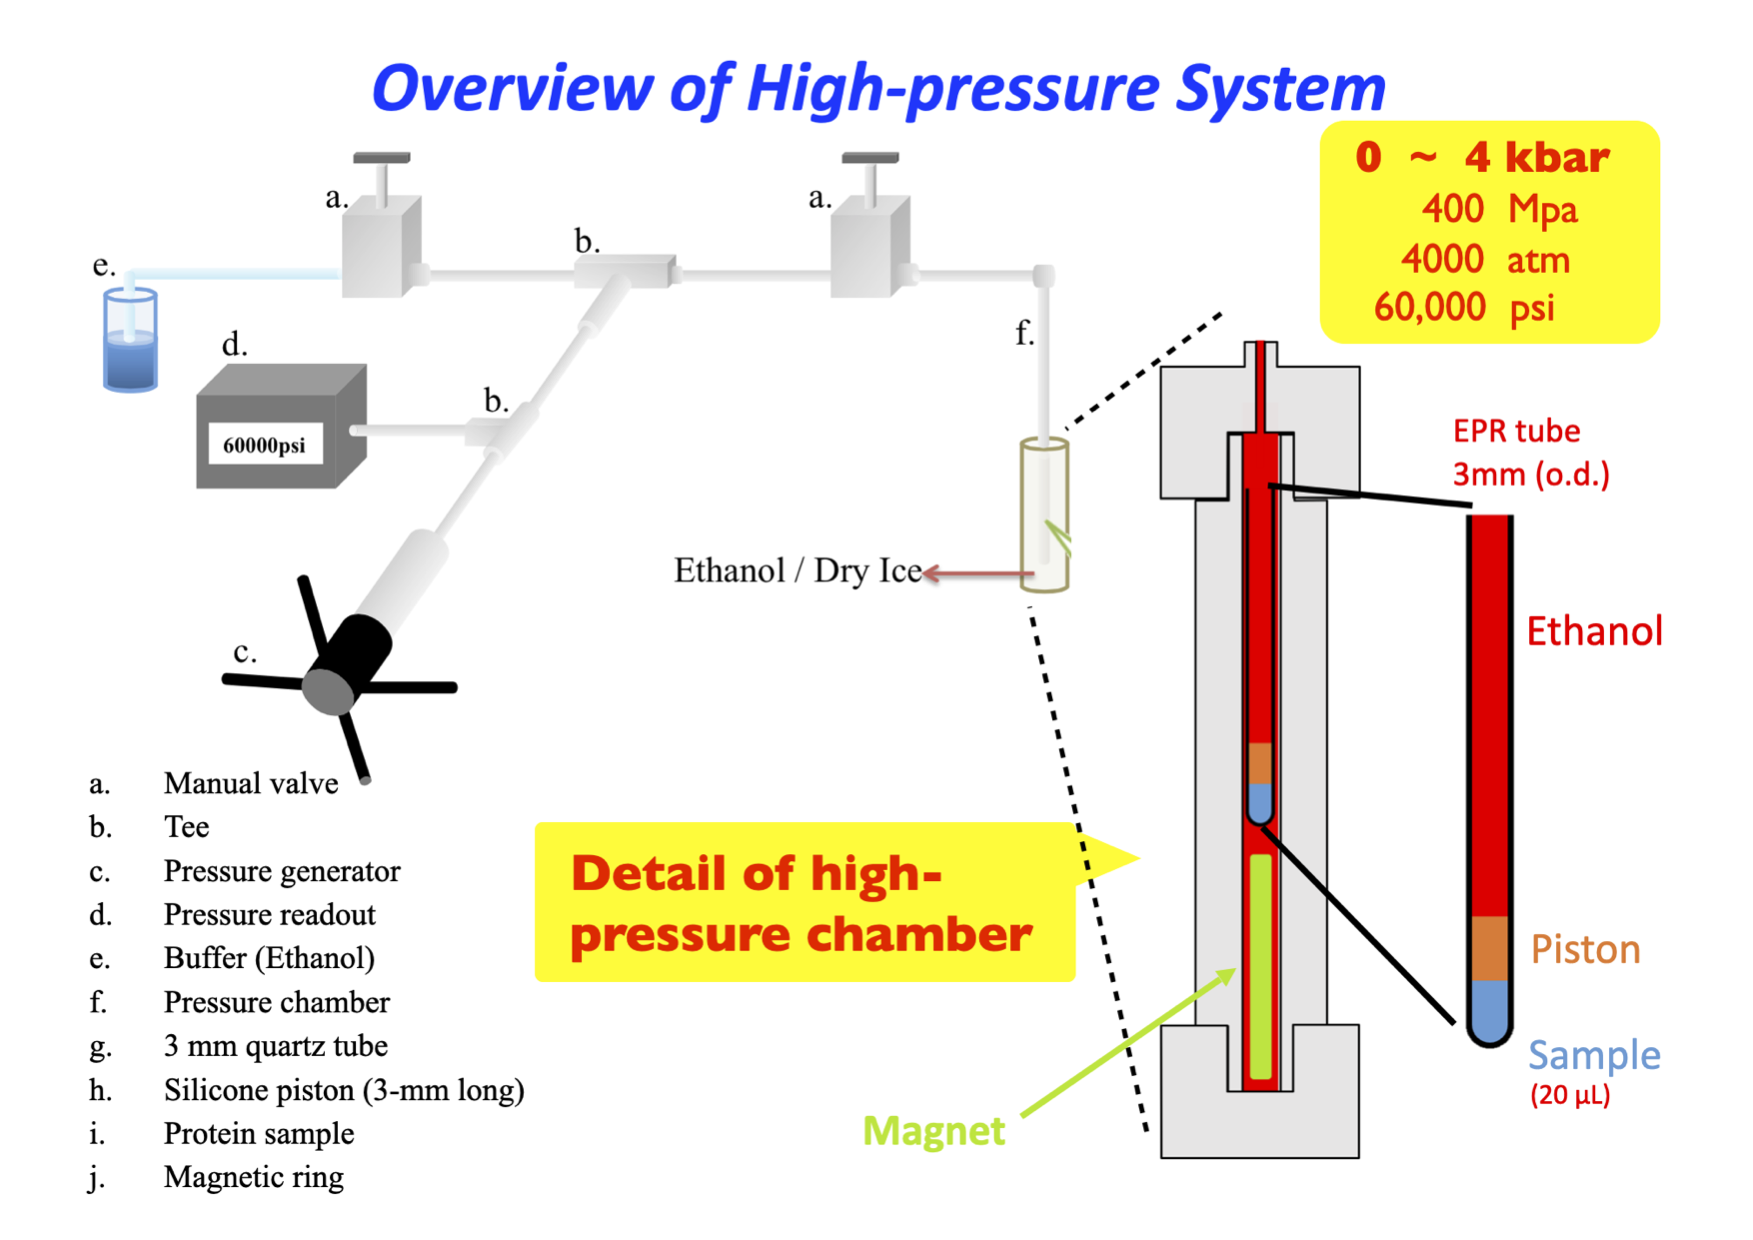 4-kbar高壓系統之架設及其生醫研究與應用